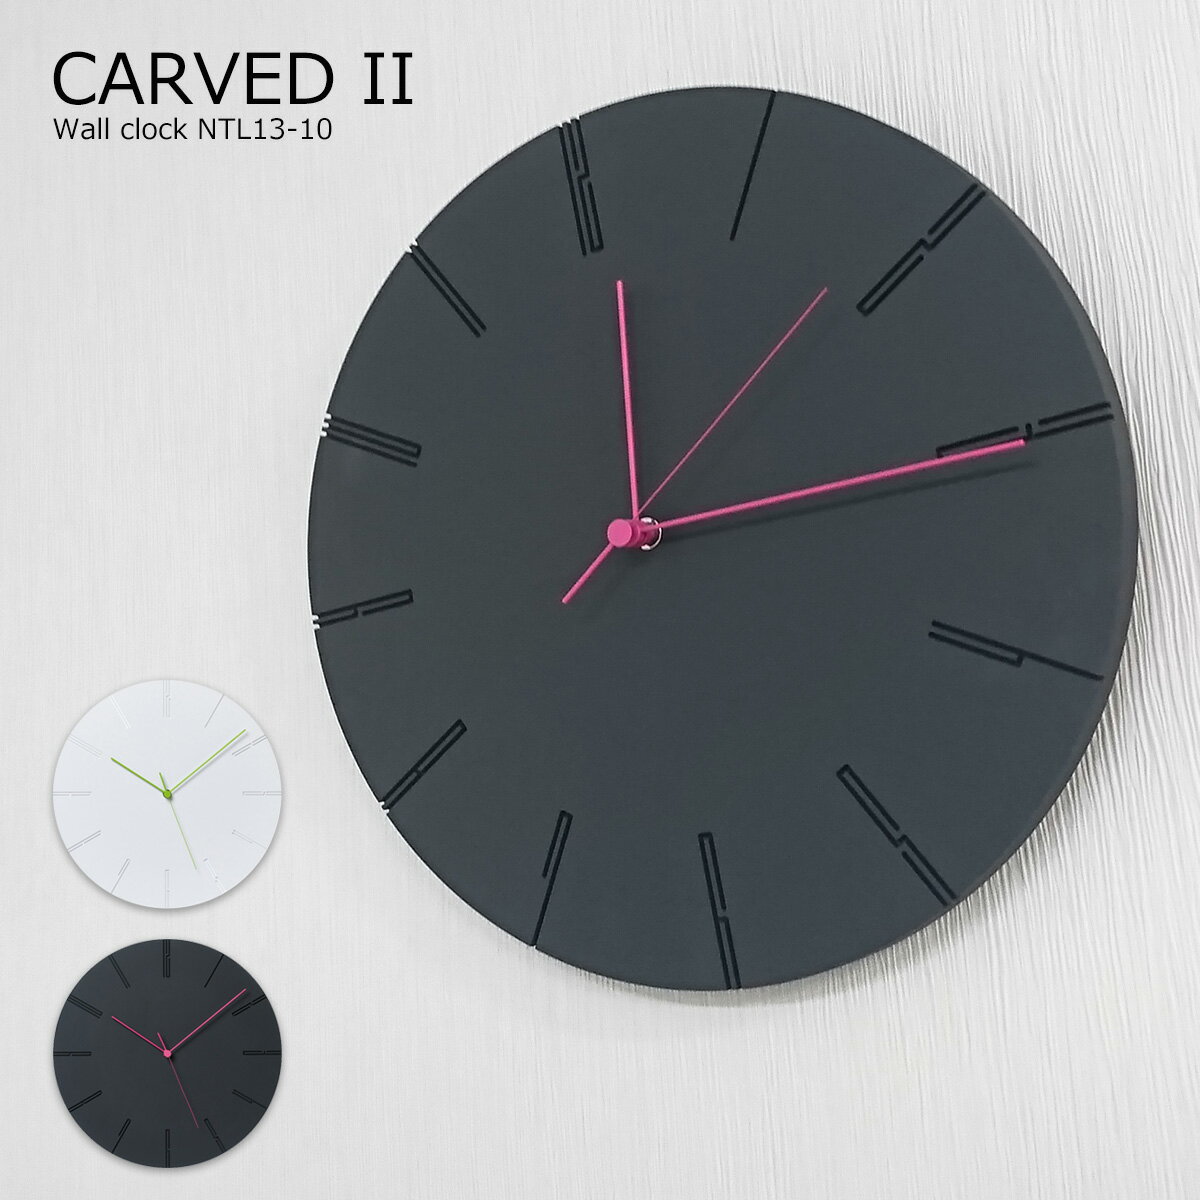 壁掛け時計 おしゃれ 時計 壁掛け 北欧 掛け時計 カーヴド2 CARVED II 北欧 